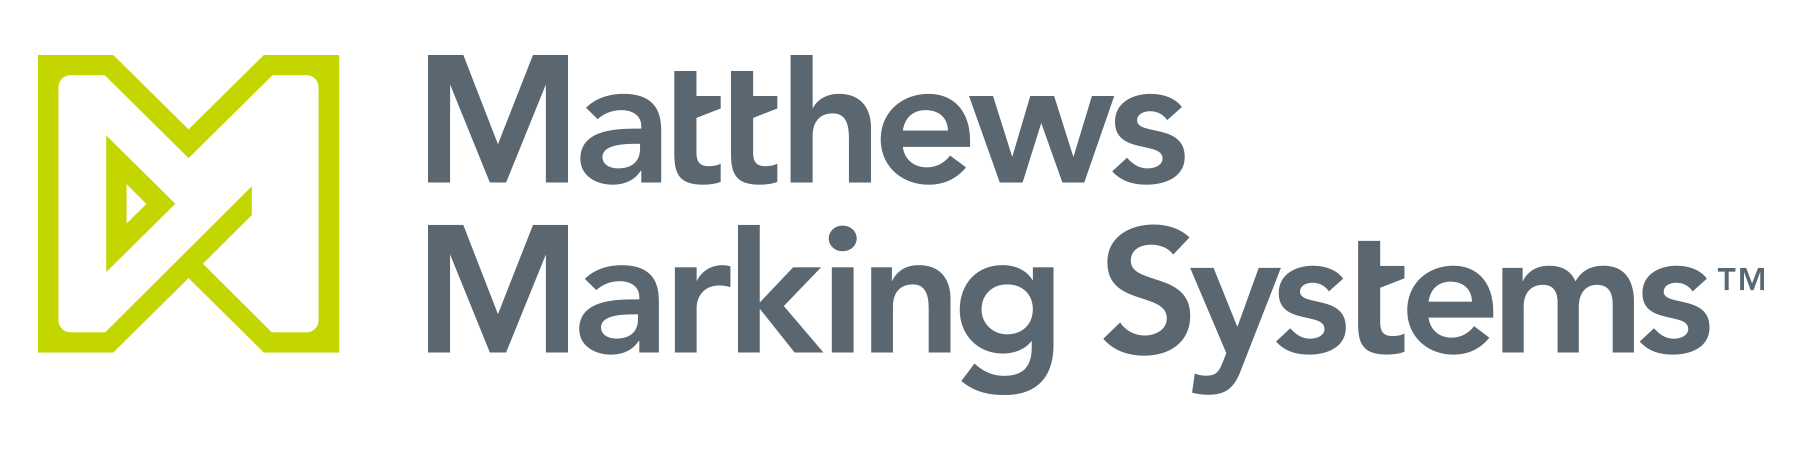 Matthews Logo - Matthews Marking Kodier- und Kennzeichnungssysteme